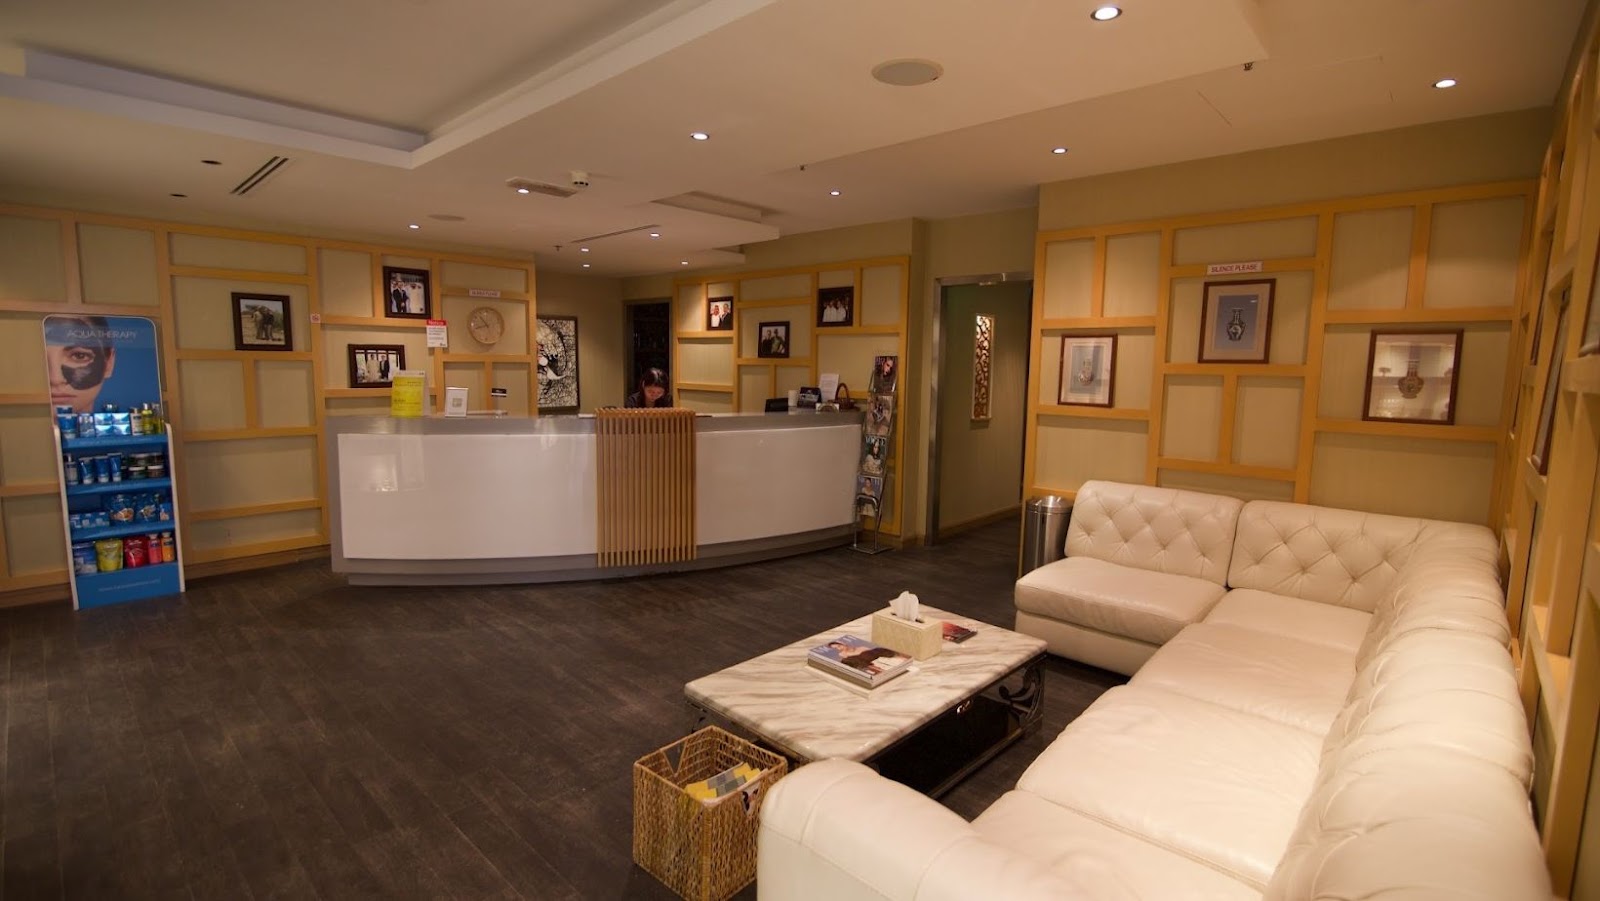 Spa Massage Centers in Dubai